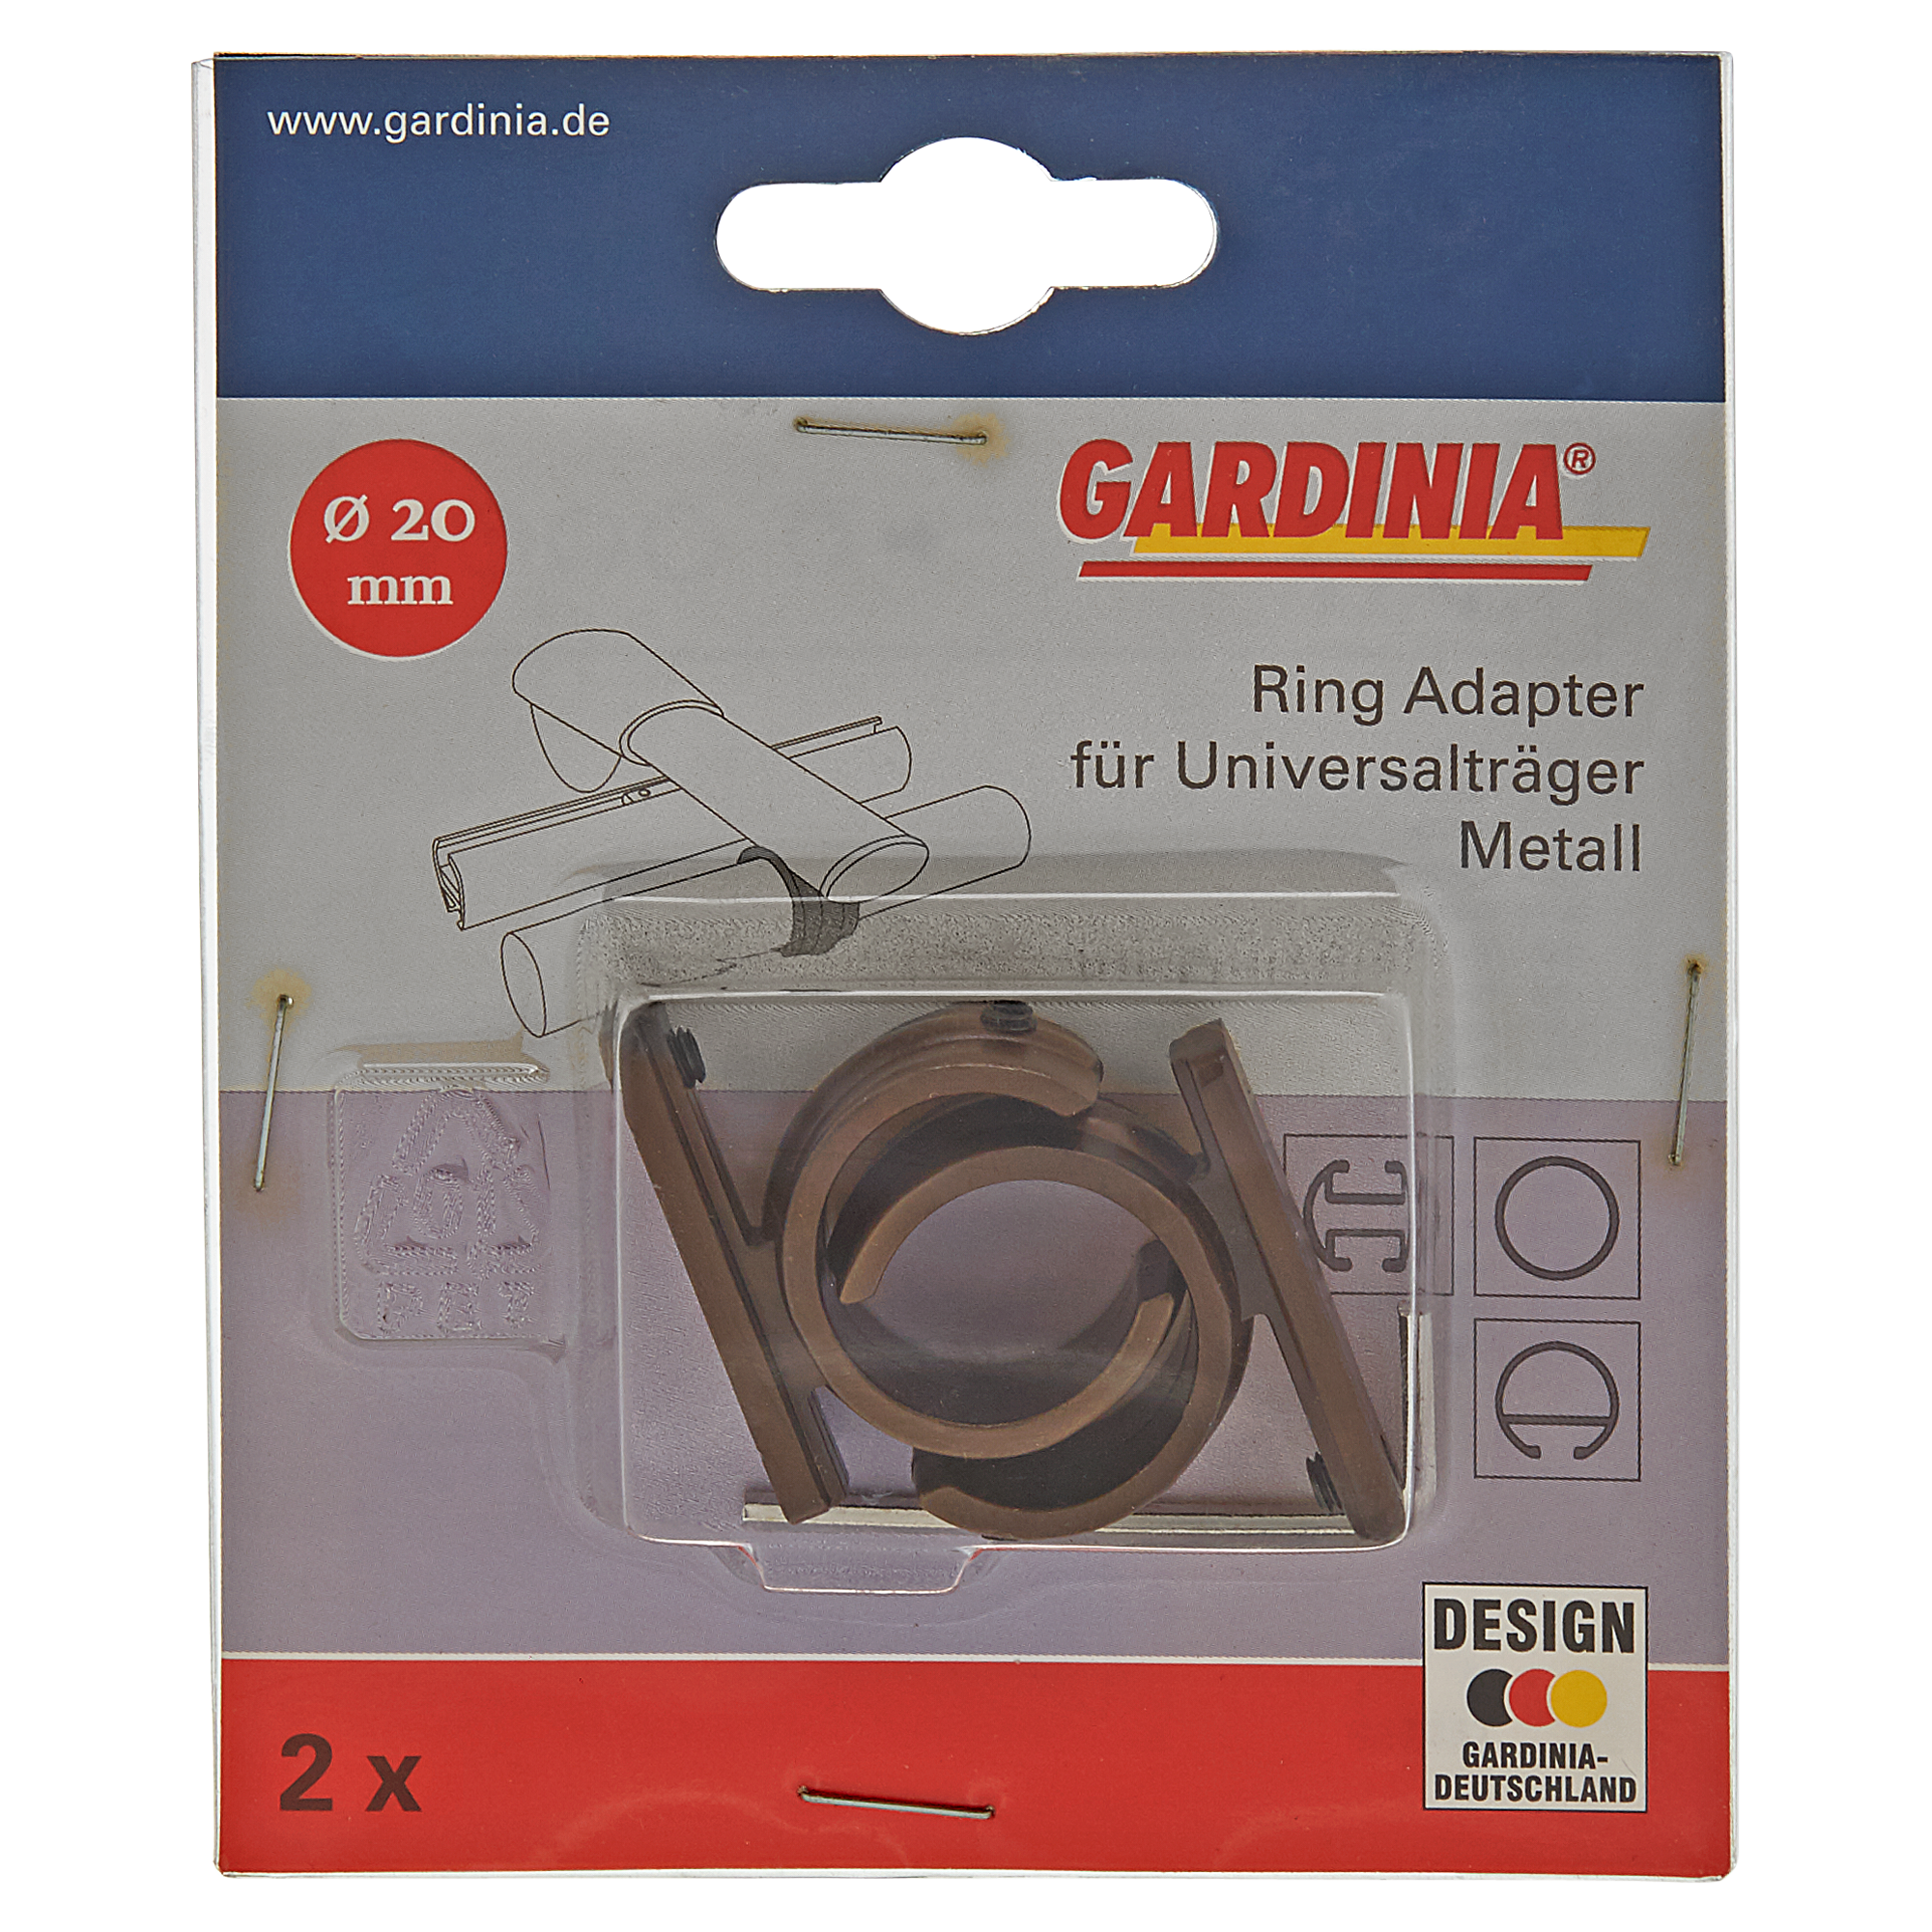 Gardinenstangen-Ringadapter Metall bronzefarben Ø 20 mm 2 Stück + product picture